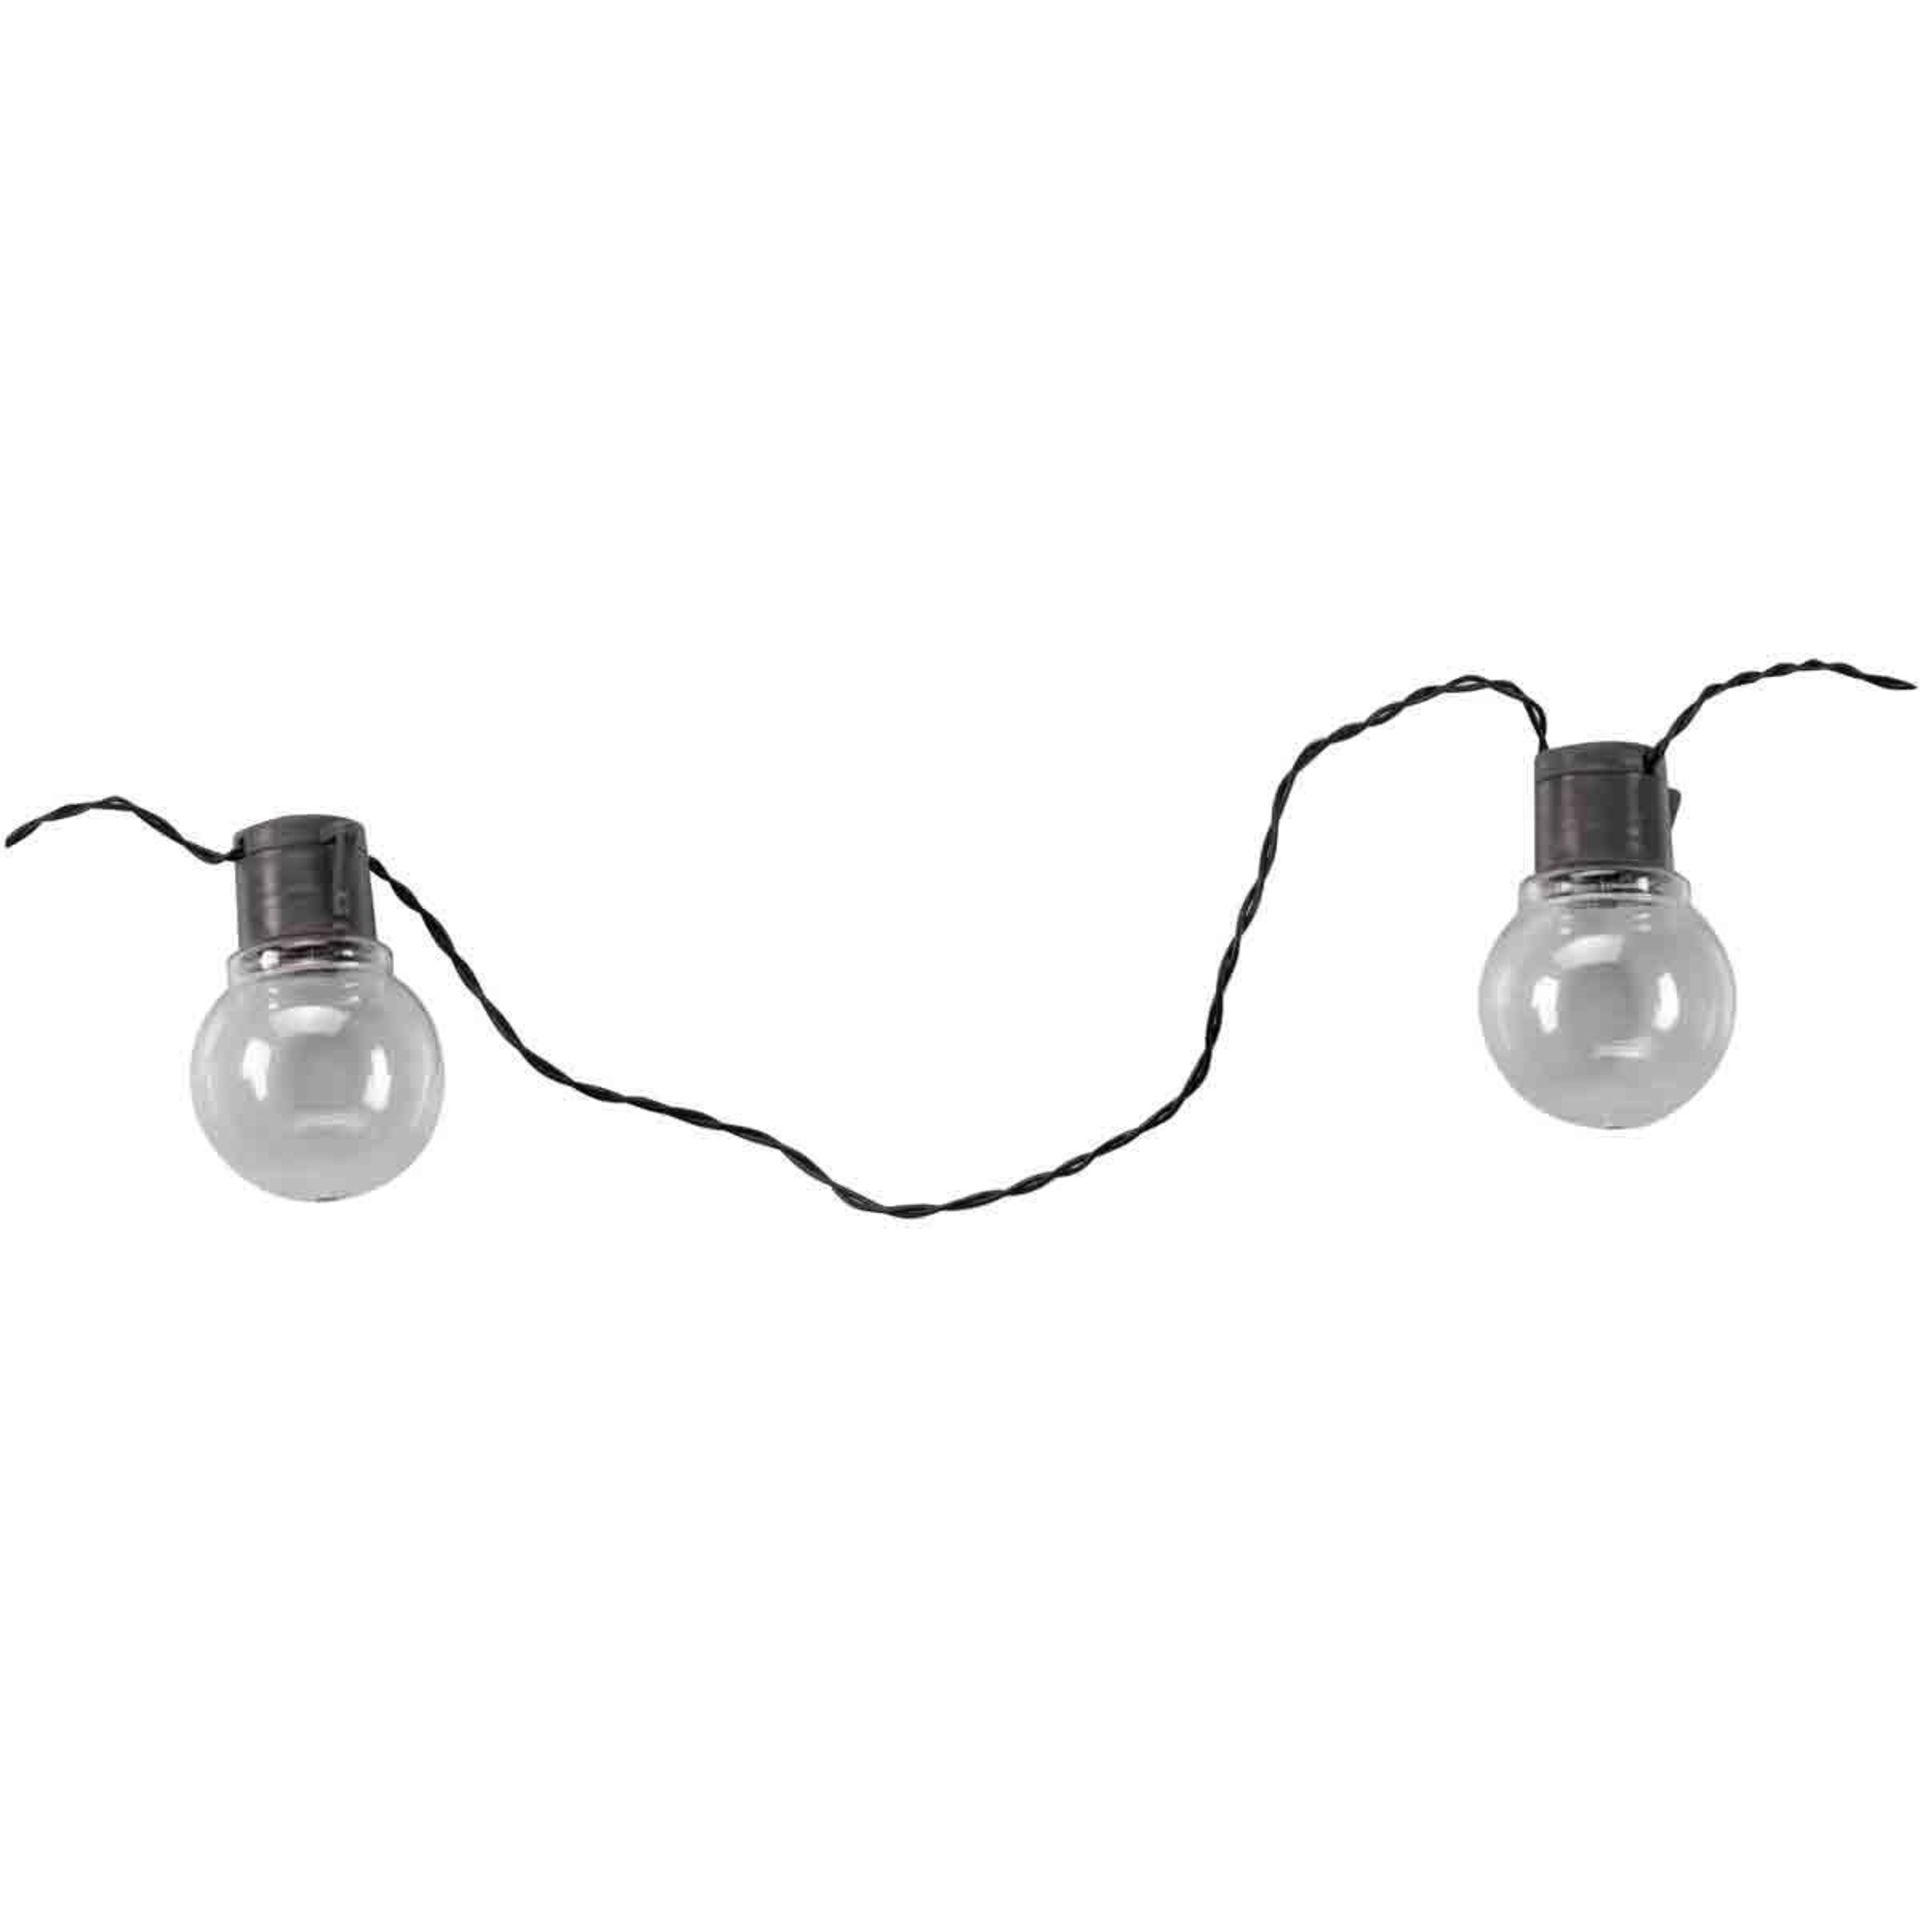 Smart Solar LED 10m String Light (Set of 20 Lights) Warm White Clear - SR48. This Solar String Light